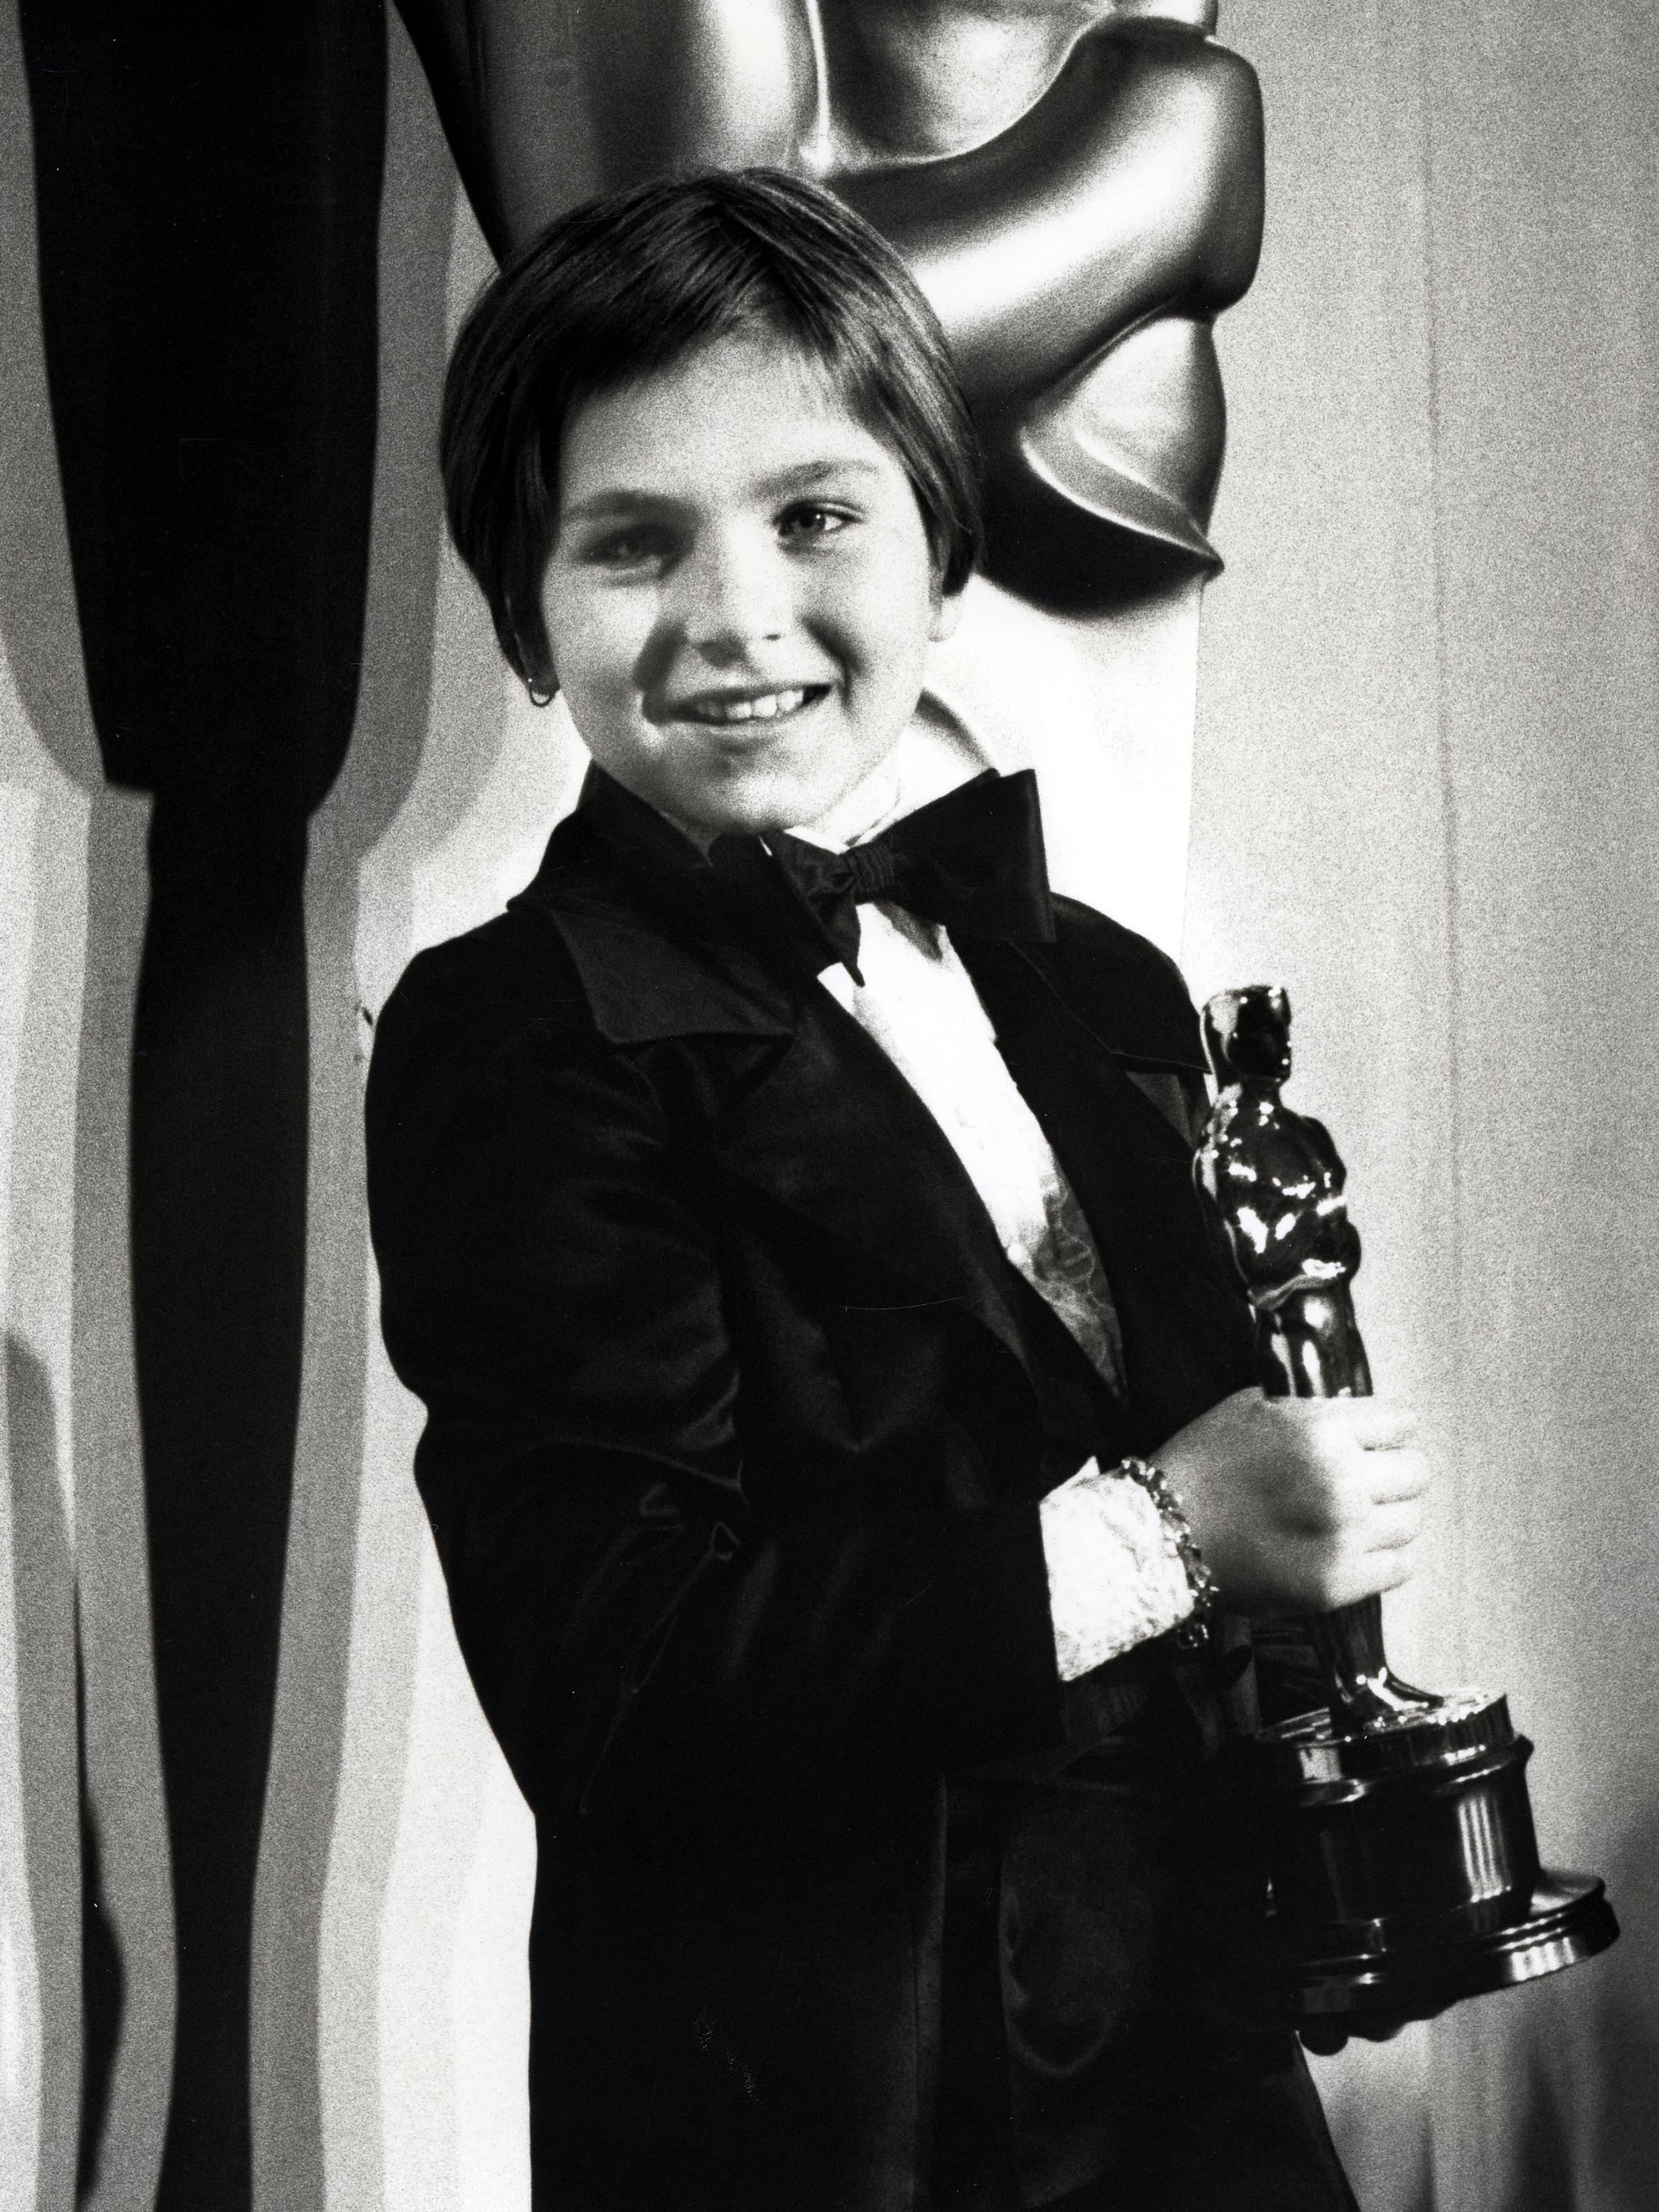 46th Annual Academy Awards